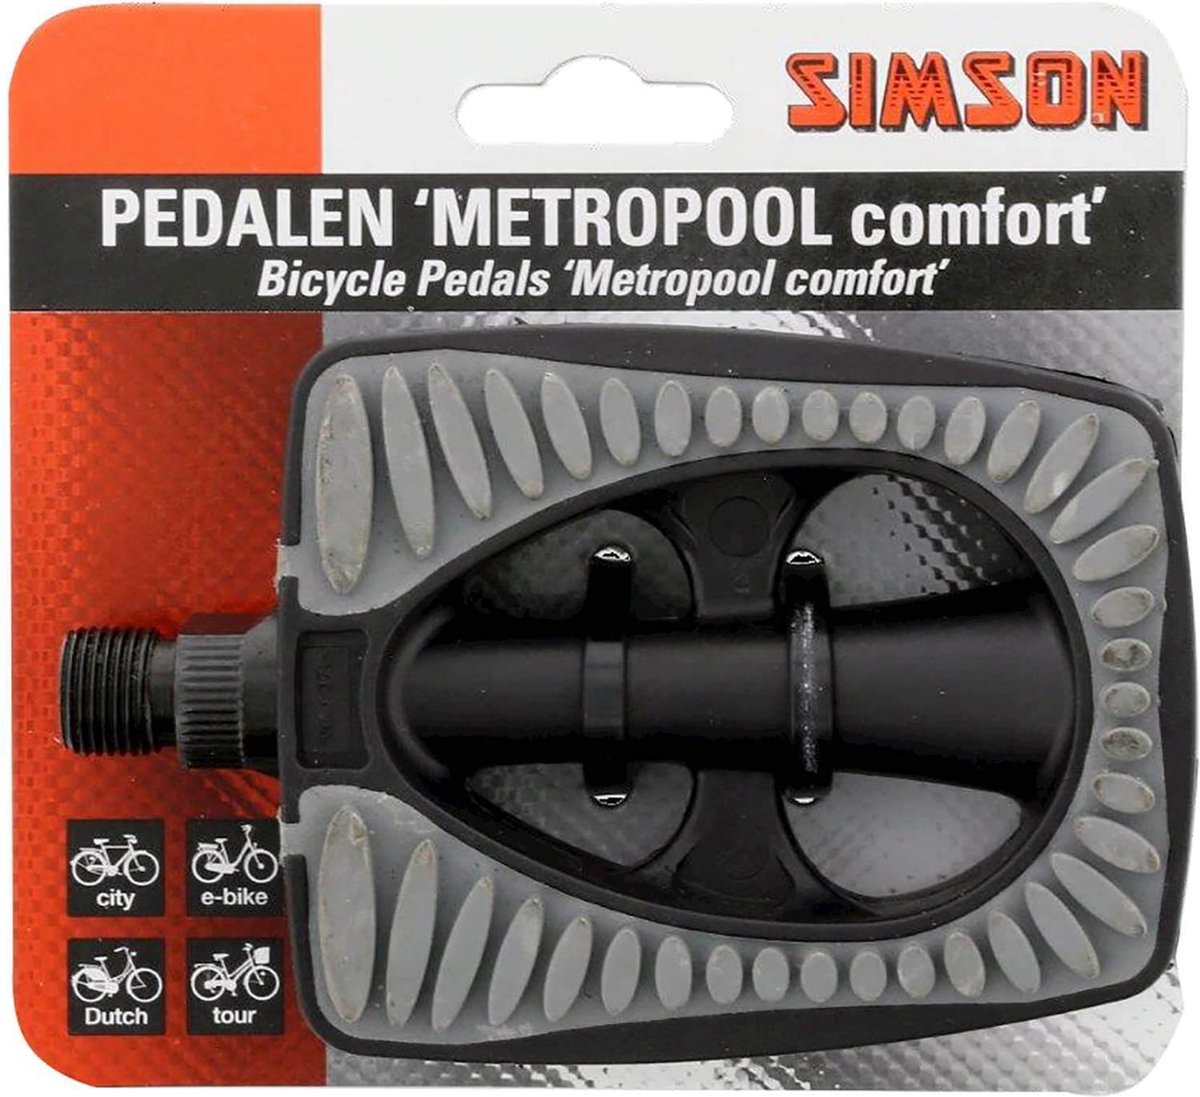 fiets pedaal - Simson Pedalen 'Metropool comfort'